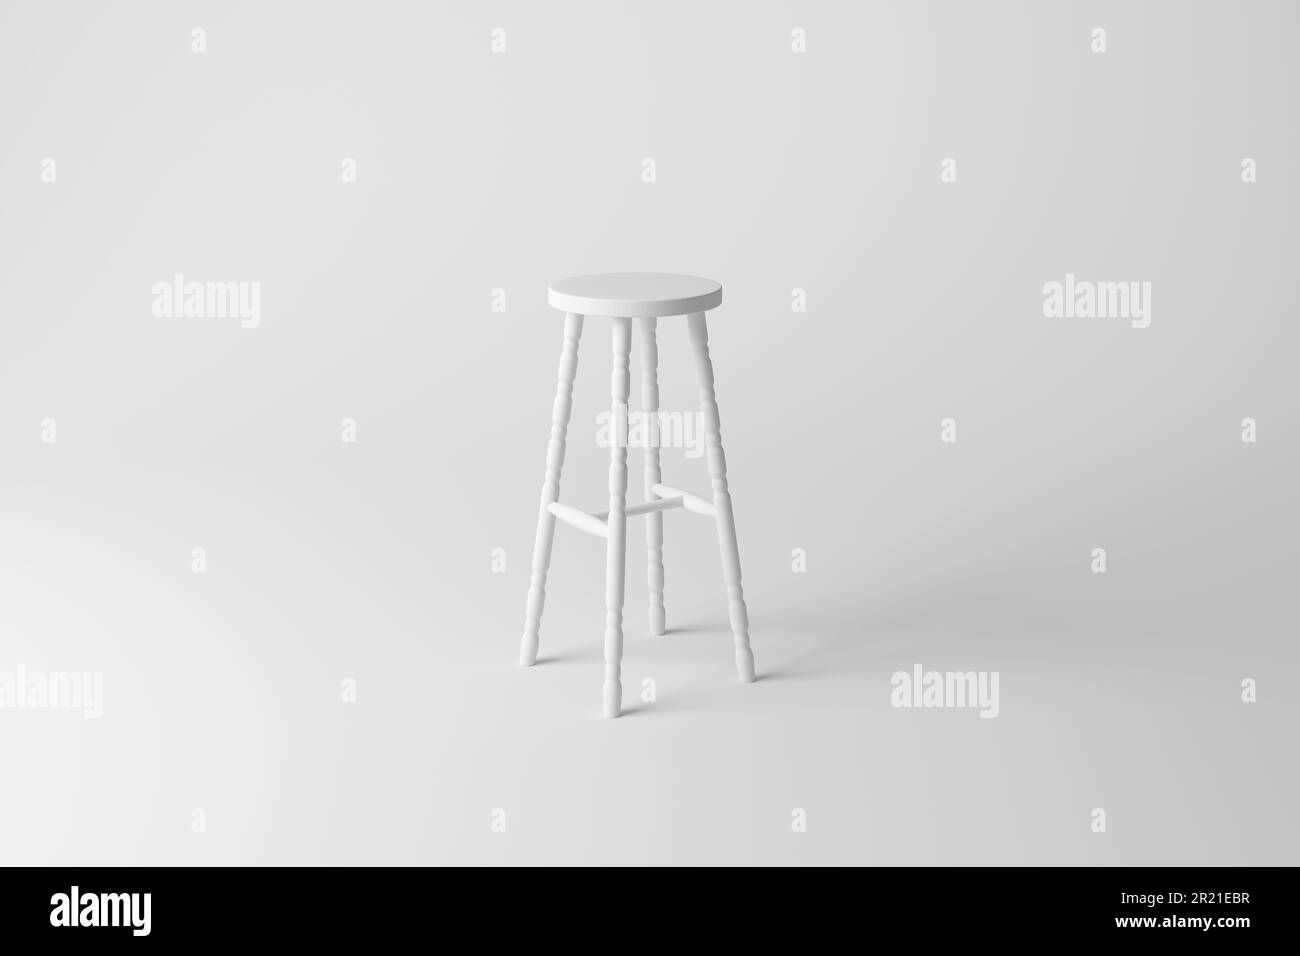 Weißer vierbeiniger Stuhl auf weißem Hintergrund mit einfarbigem Hintergrund. Darstellung als minimalistisches Innenraumdesign Stockfoto